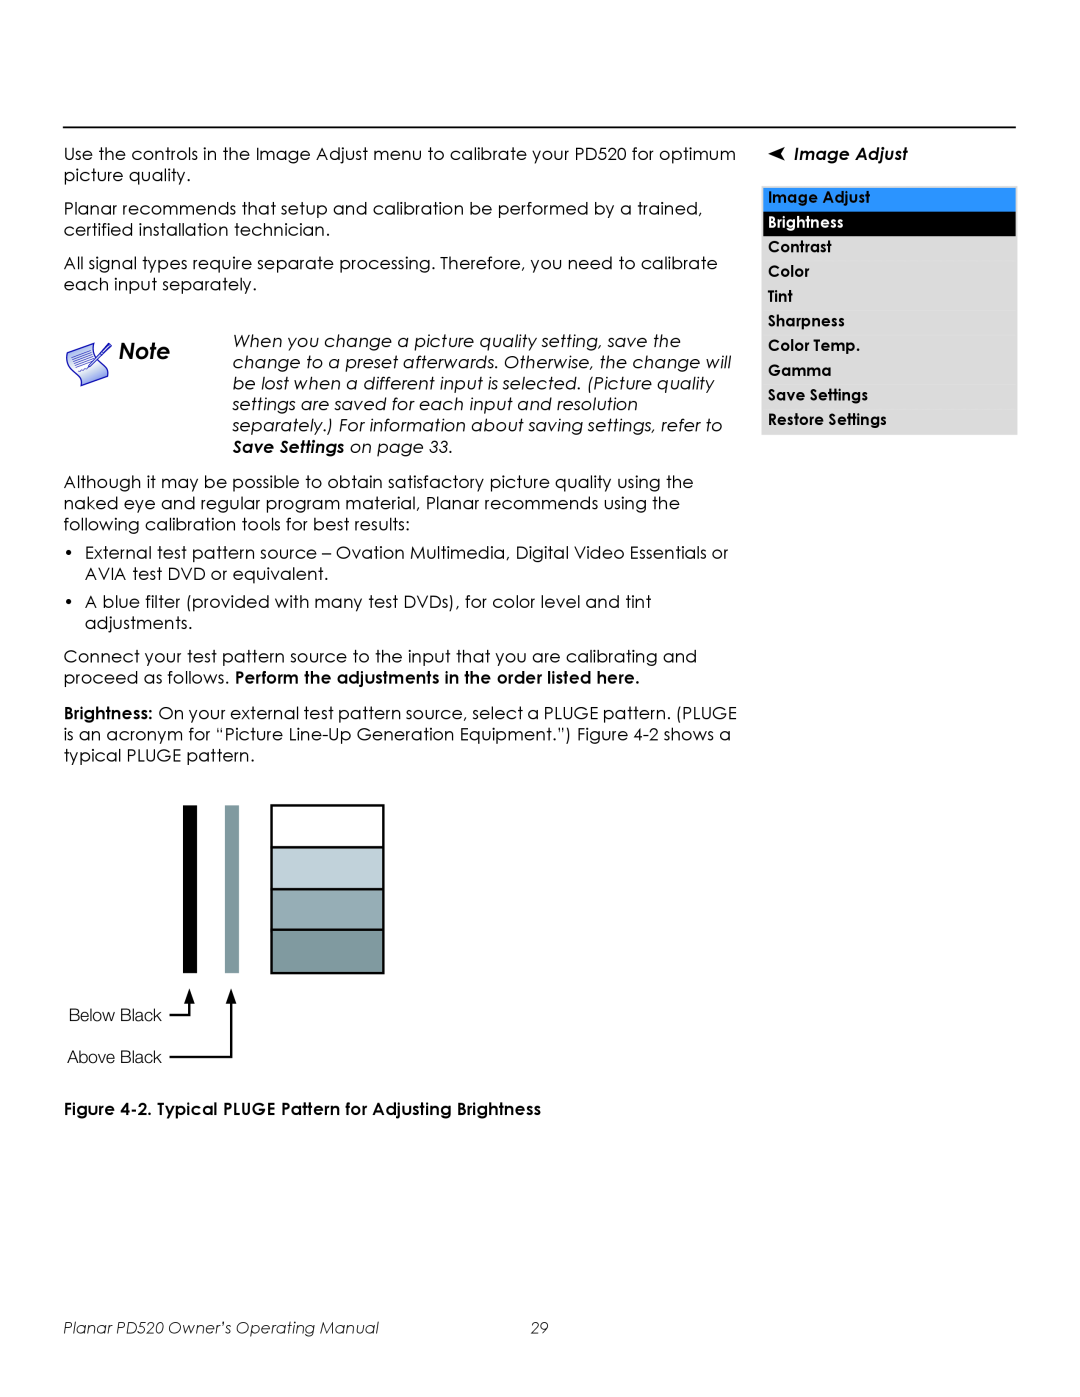 Planar PD520 manual Save Settings on page, Image Adjust 